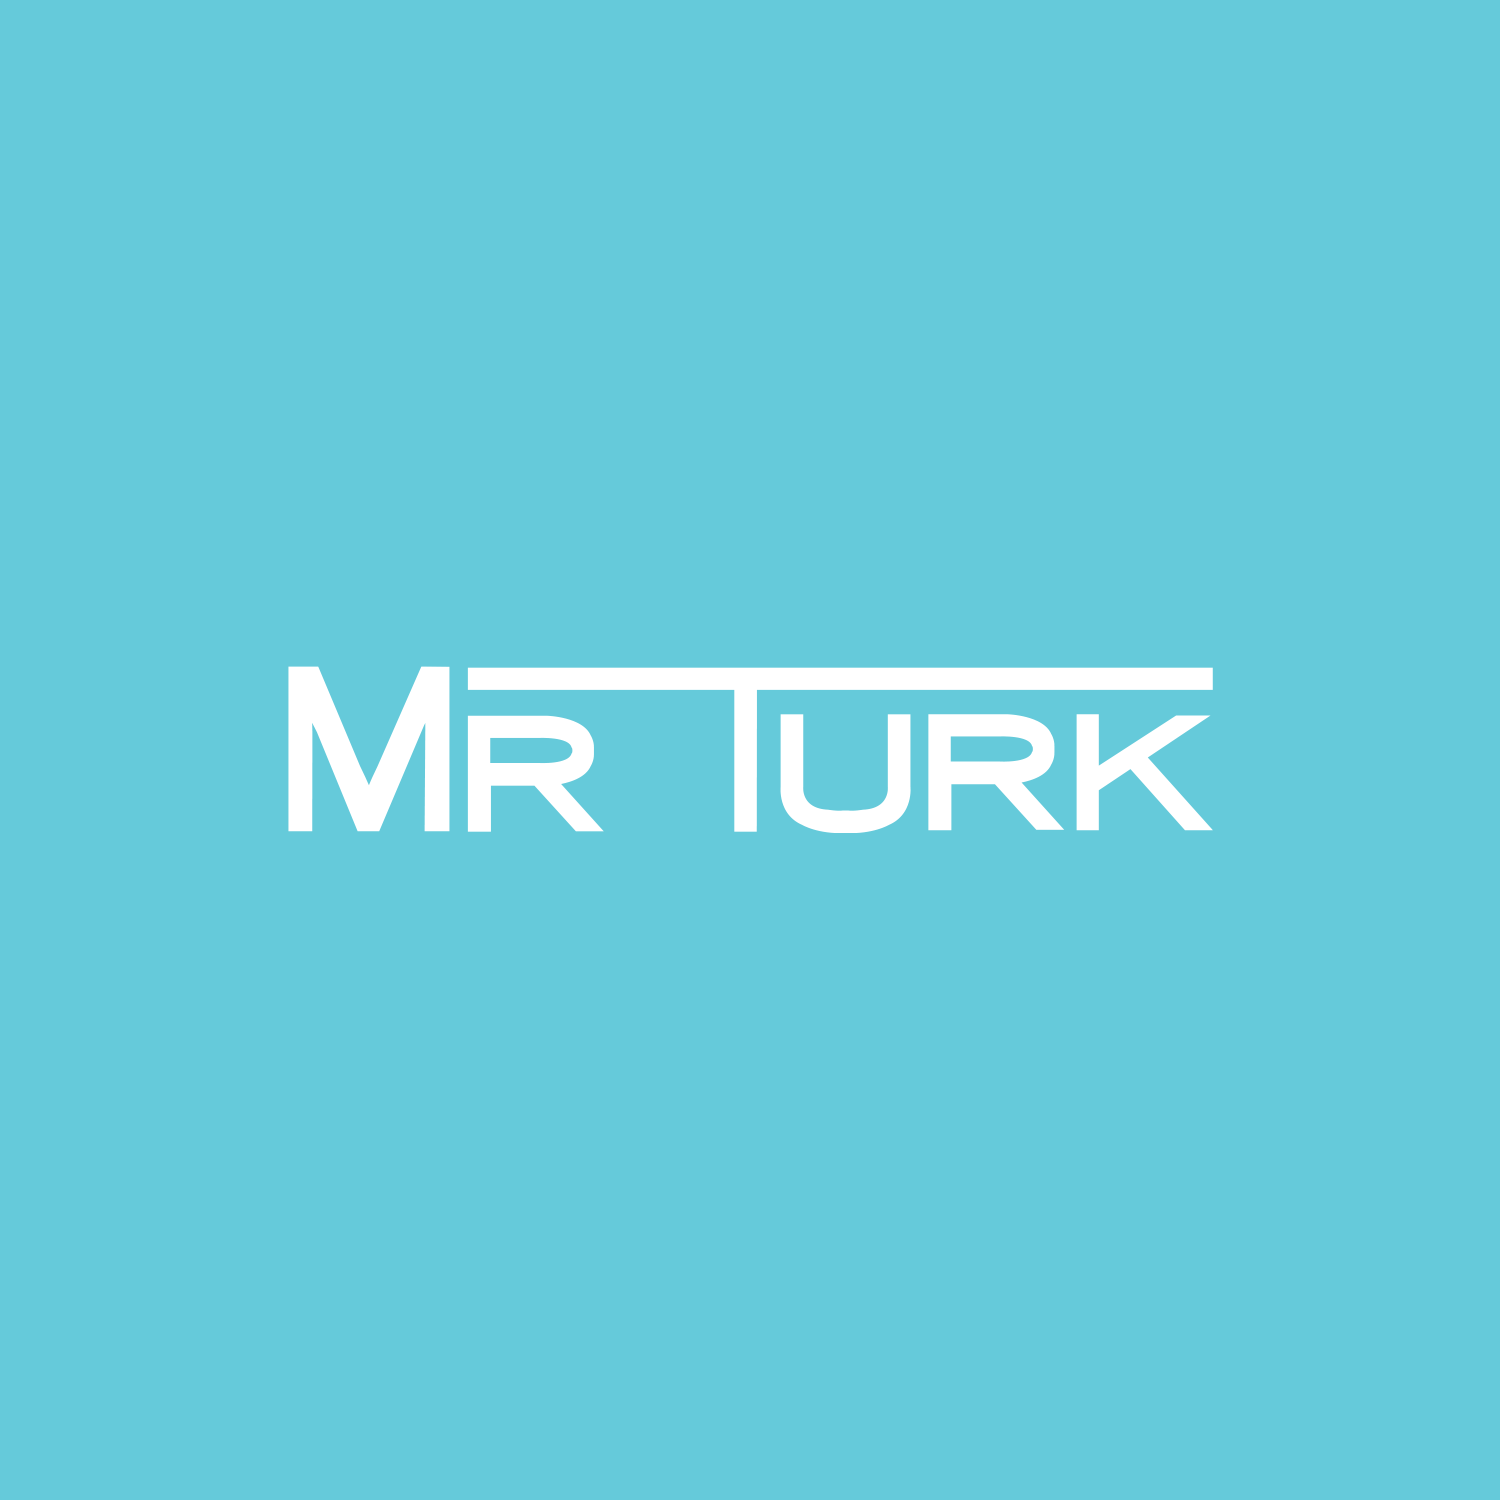 Mr Turk - Color Logo